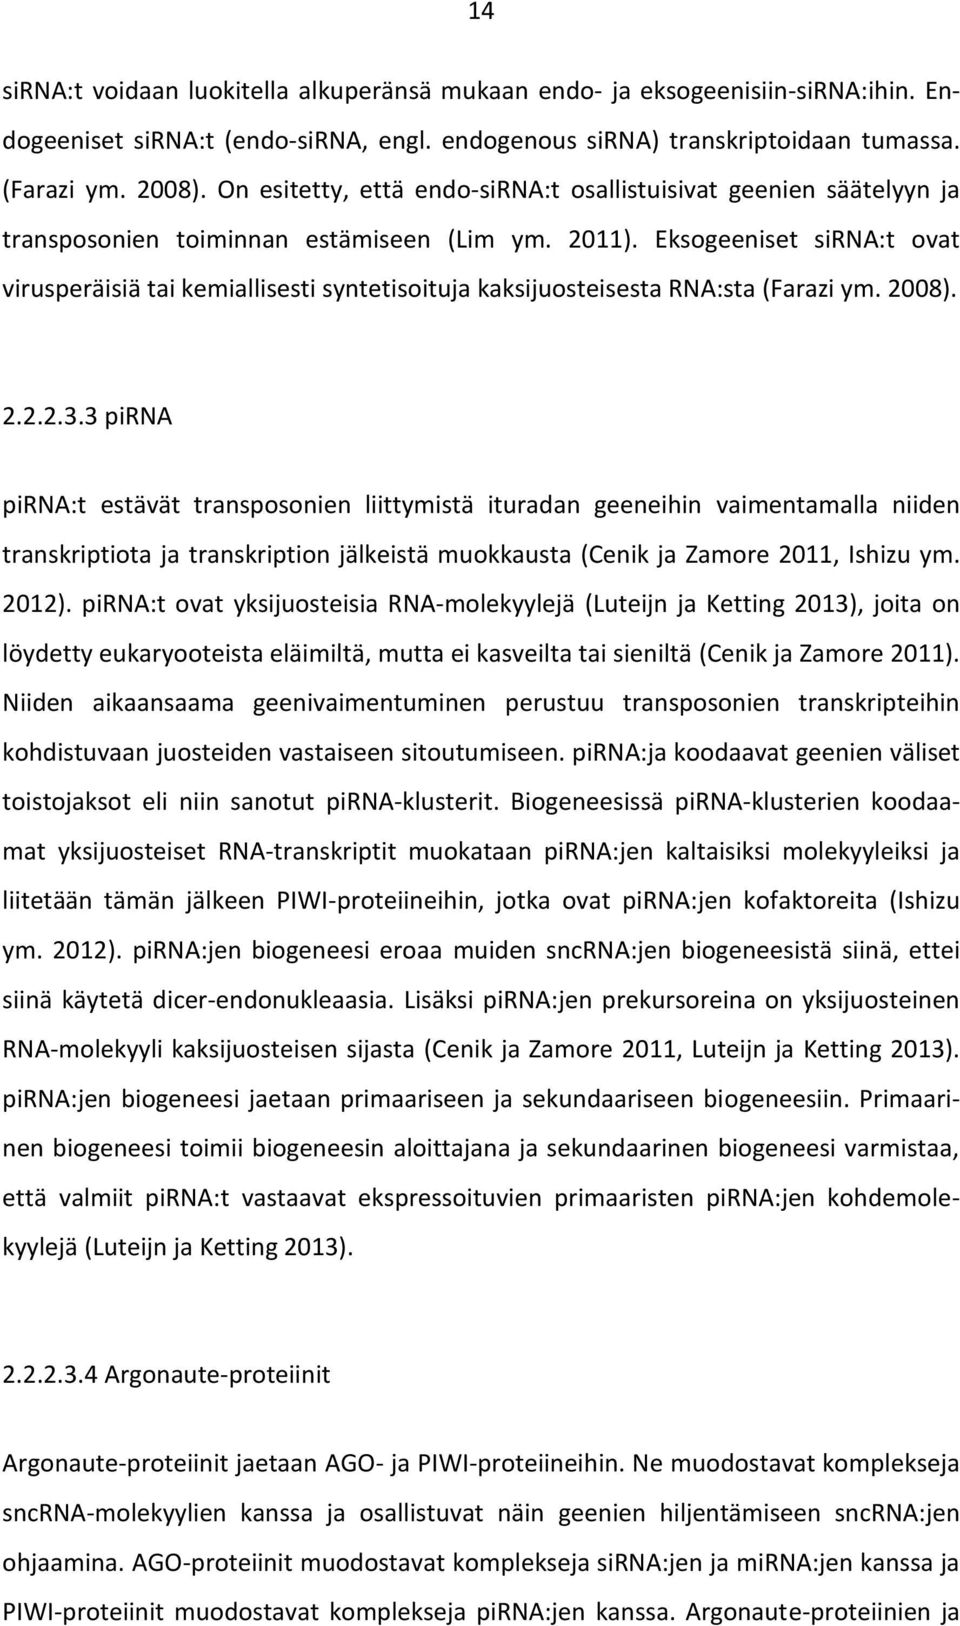 Eksogeeniset sirna:t ovat virusperäisiä tai kemiallisesti syntetisoituja kaksijuosteisesta RNA:sta (Farazi ym. 2008). 2.2.2.3.